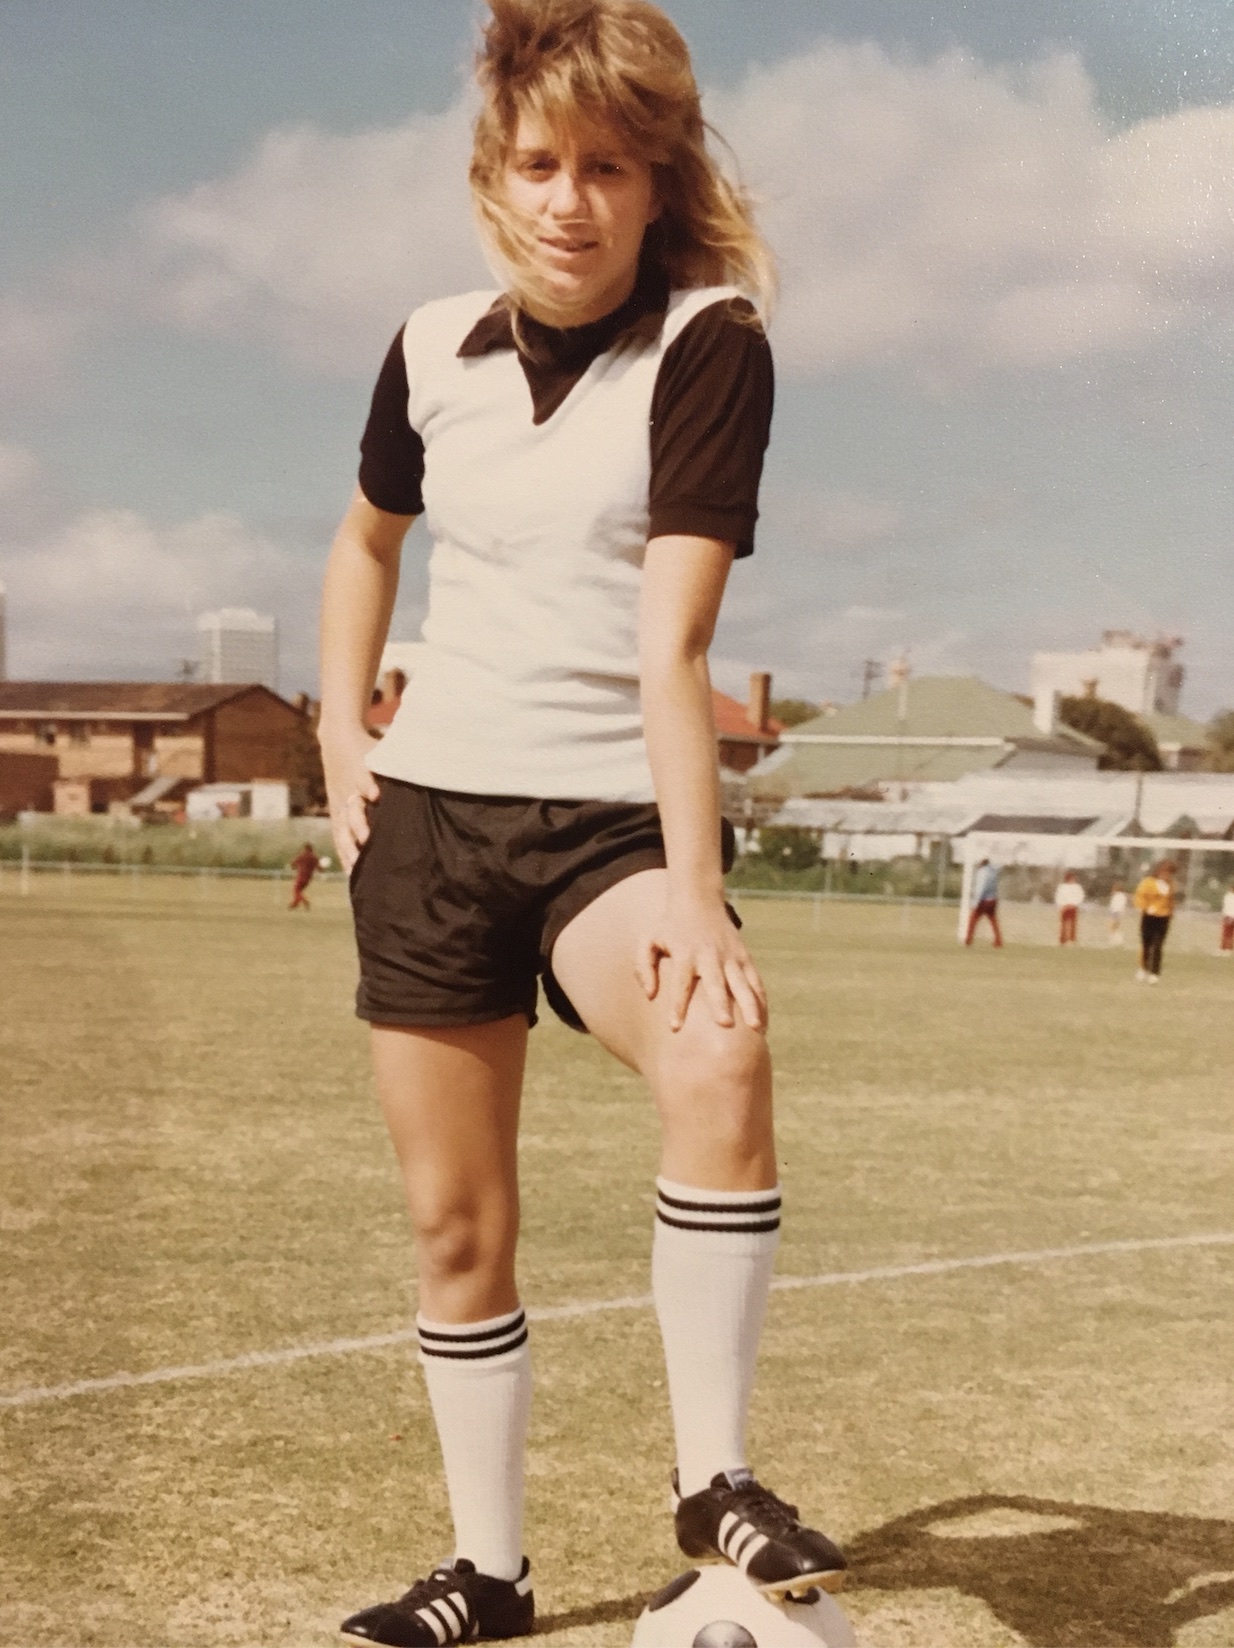 Karen Menzies as a young footballer